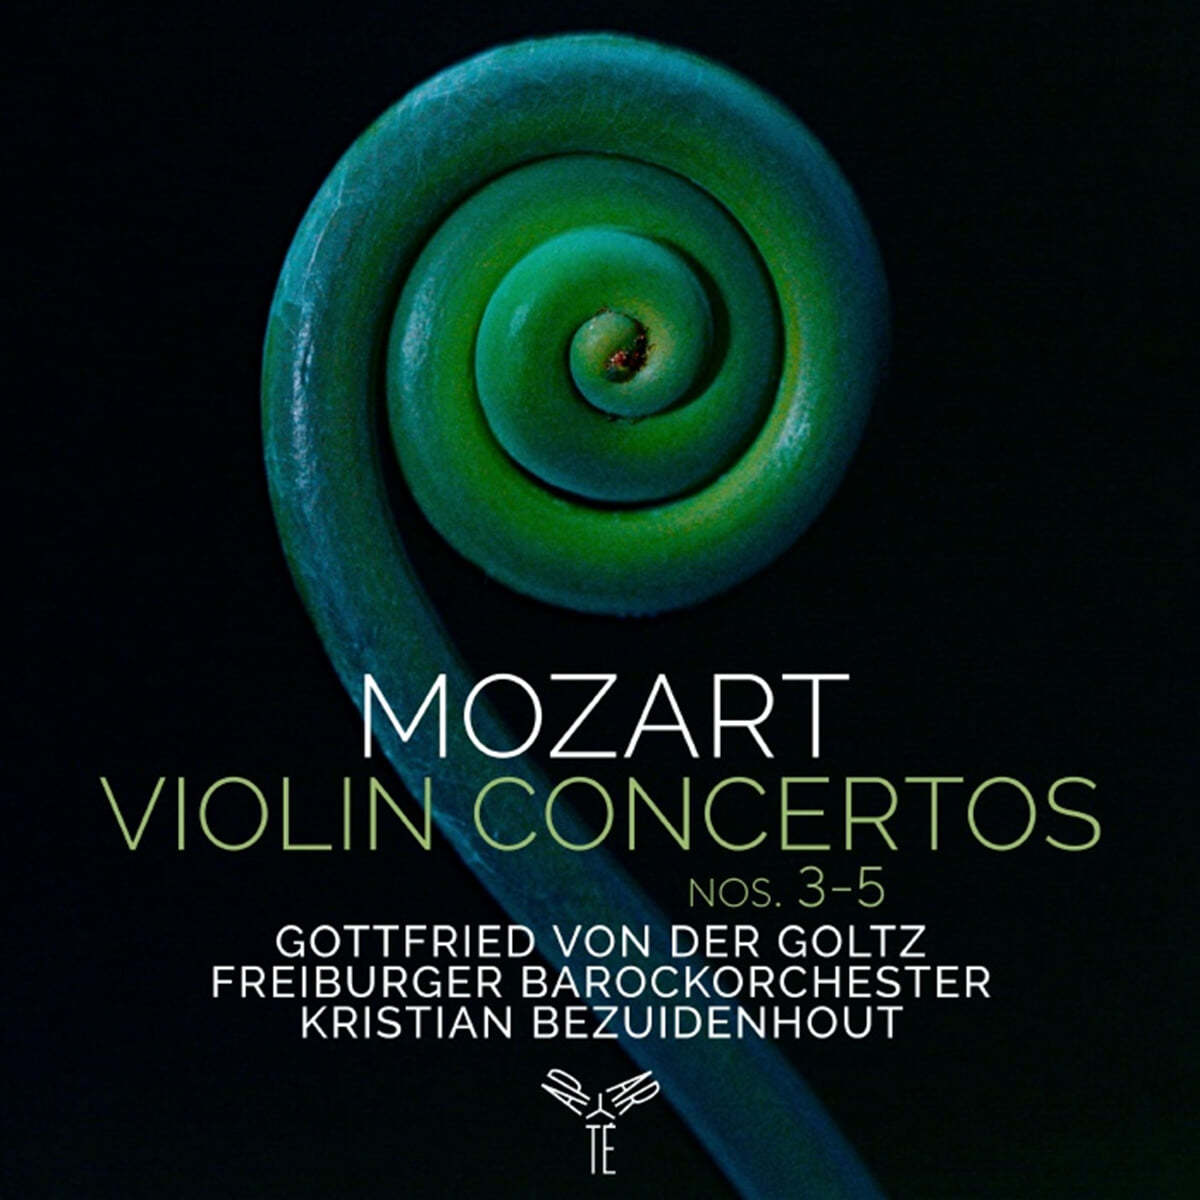 Gottfried Von Der Goltz 모차르트: 바이올린 협주곡 3,4,5번 (Mozart: Violin Concertos Nos. 3,4,5)